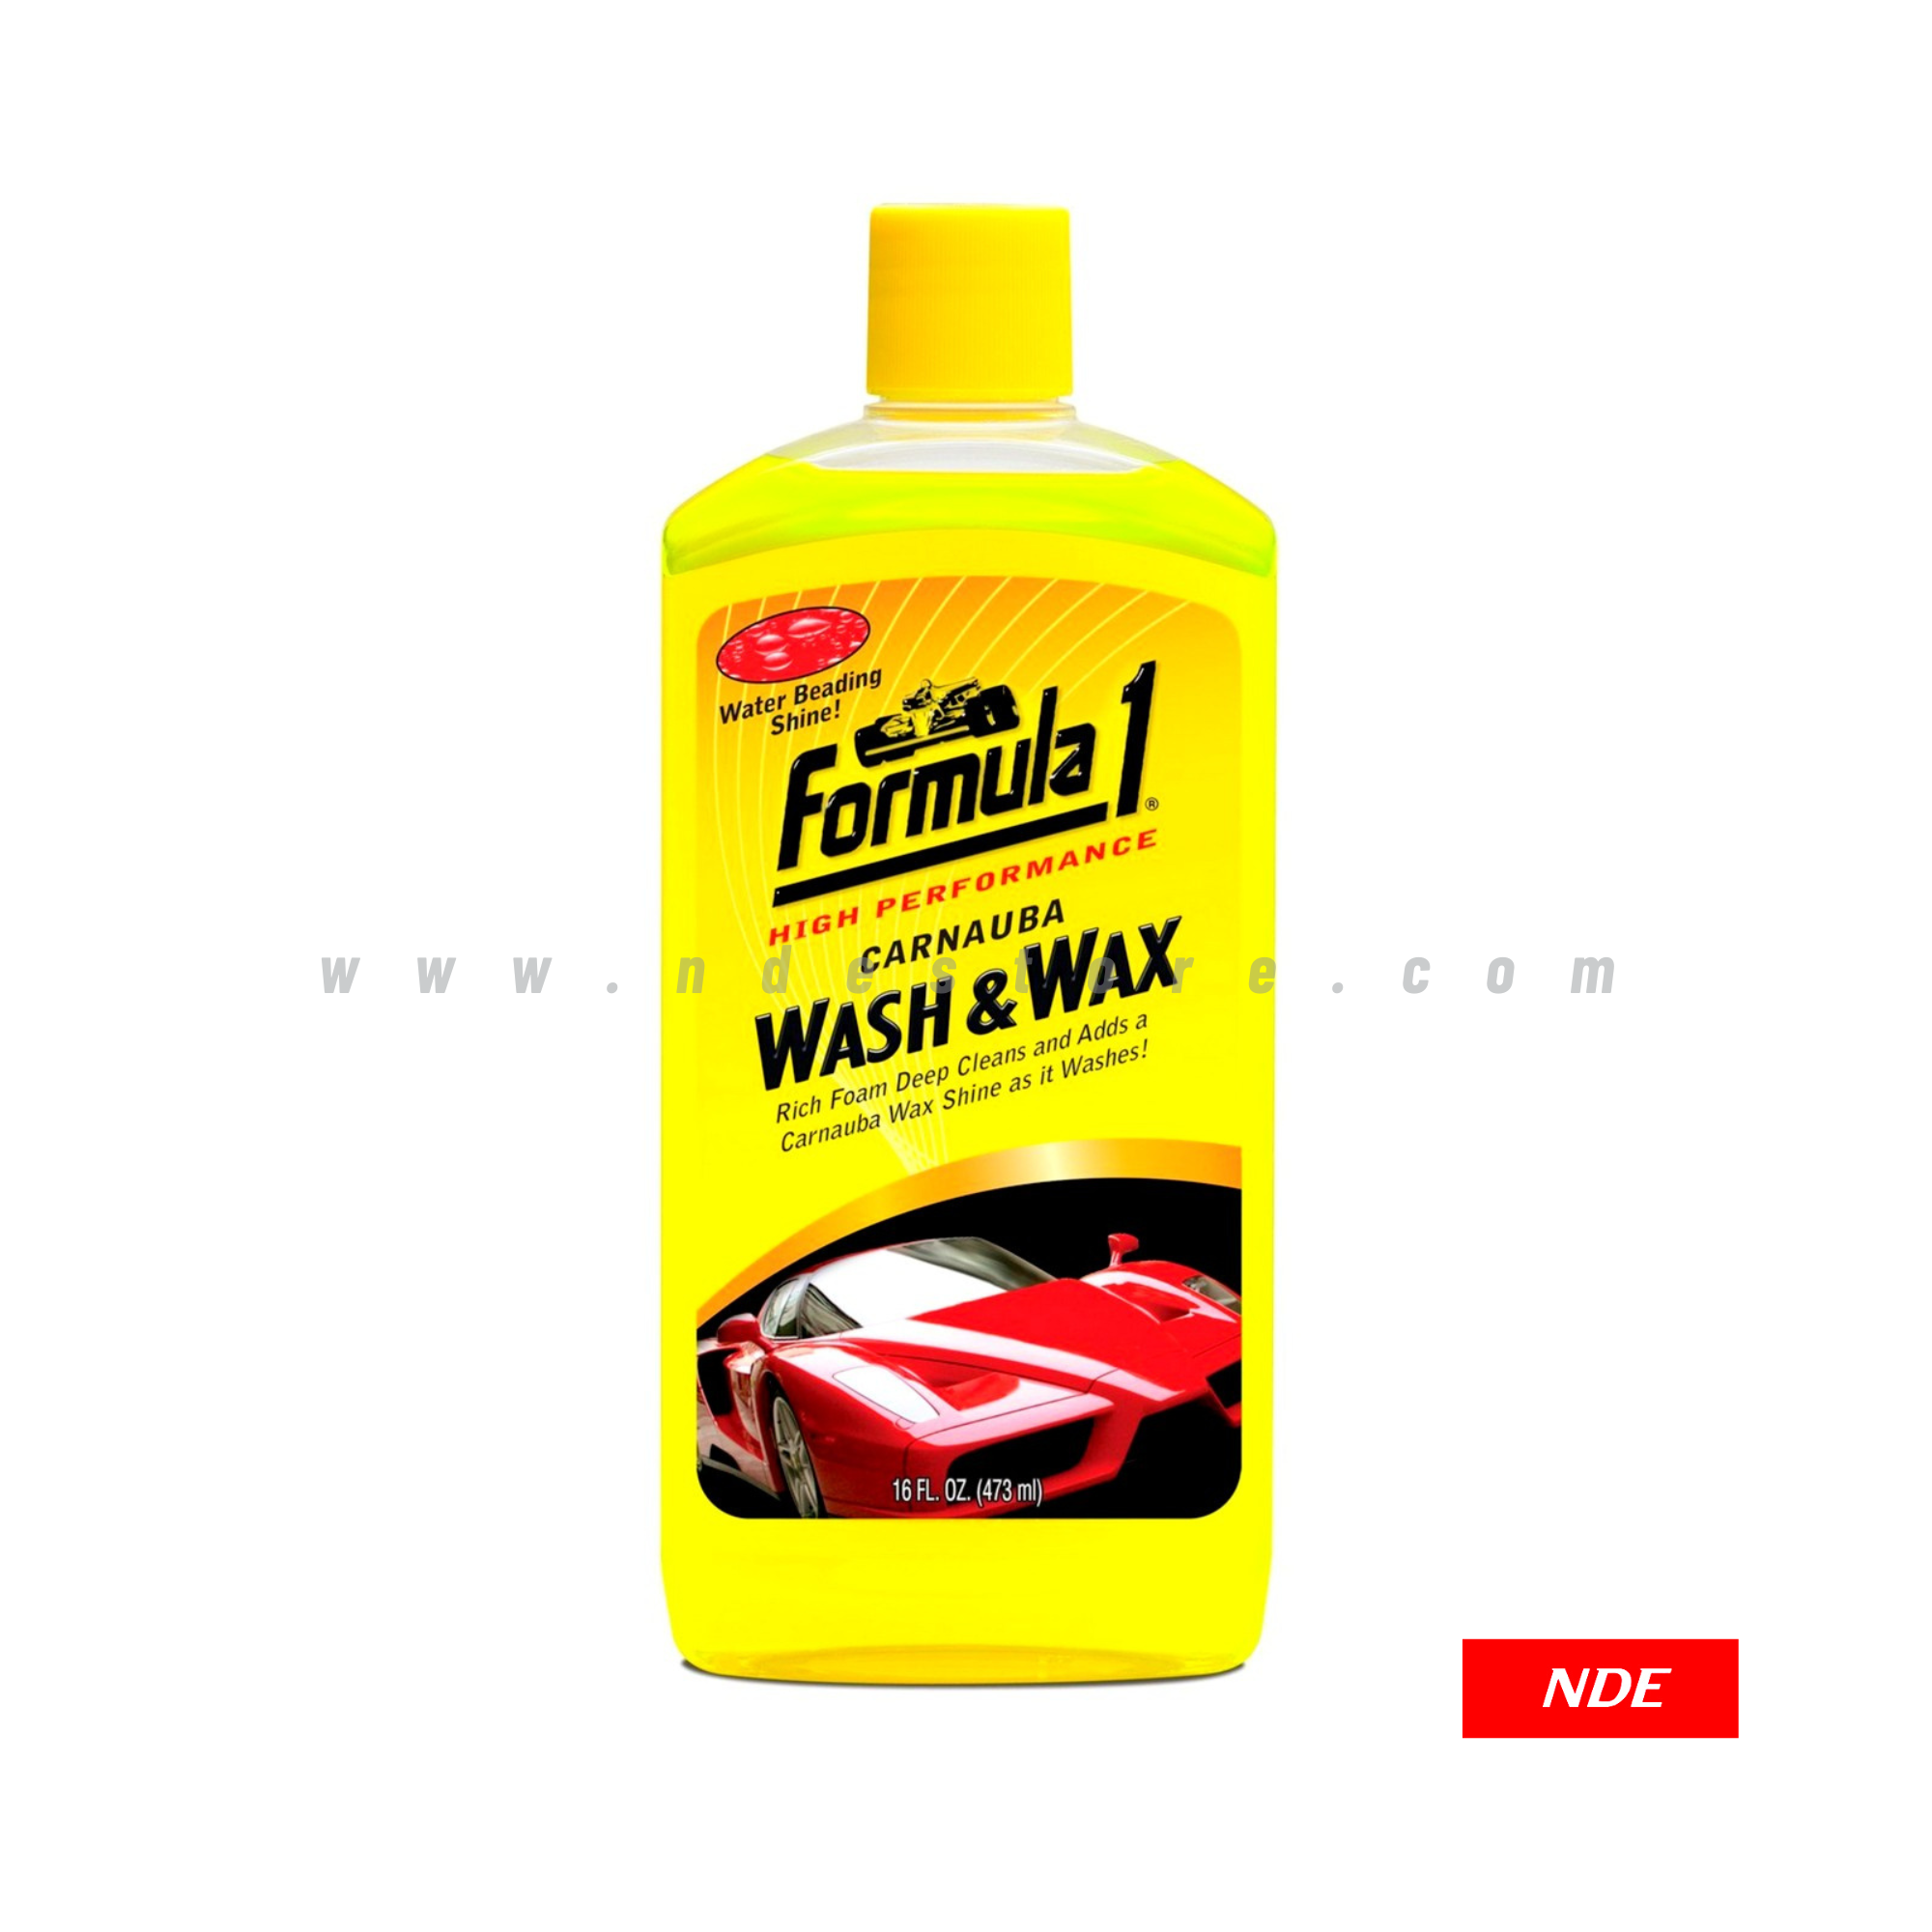 WASH & WAX - FORMULA 1